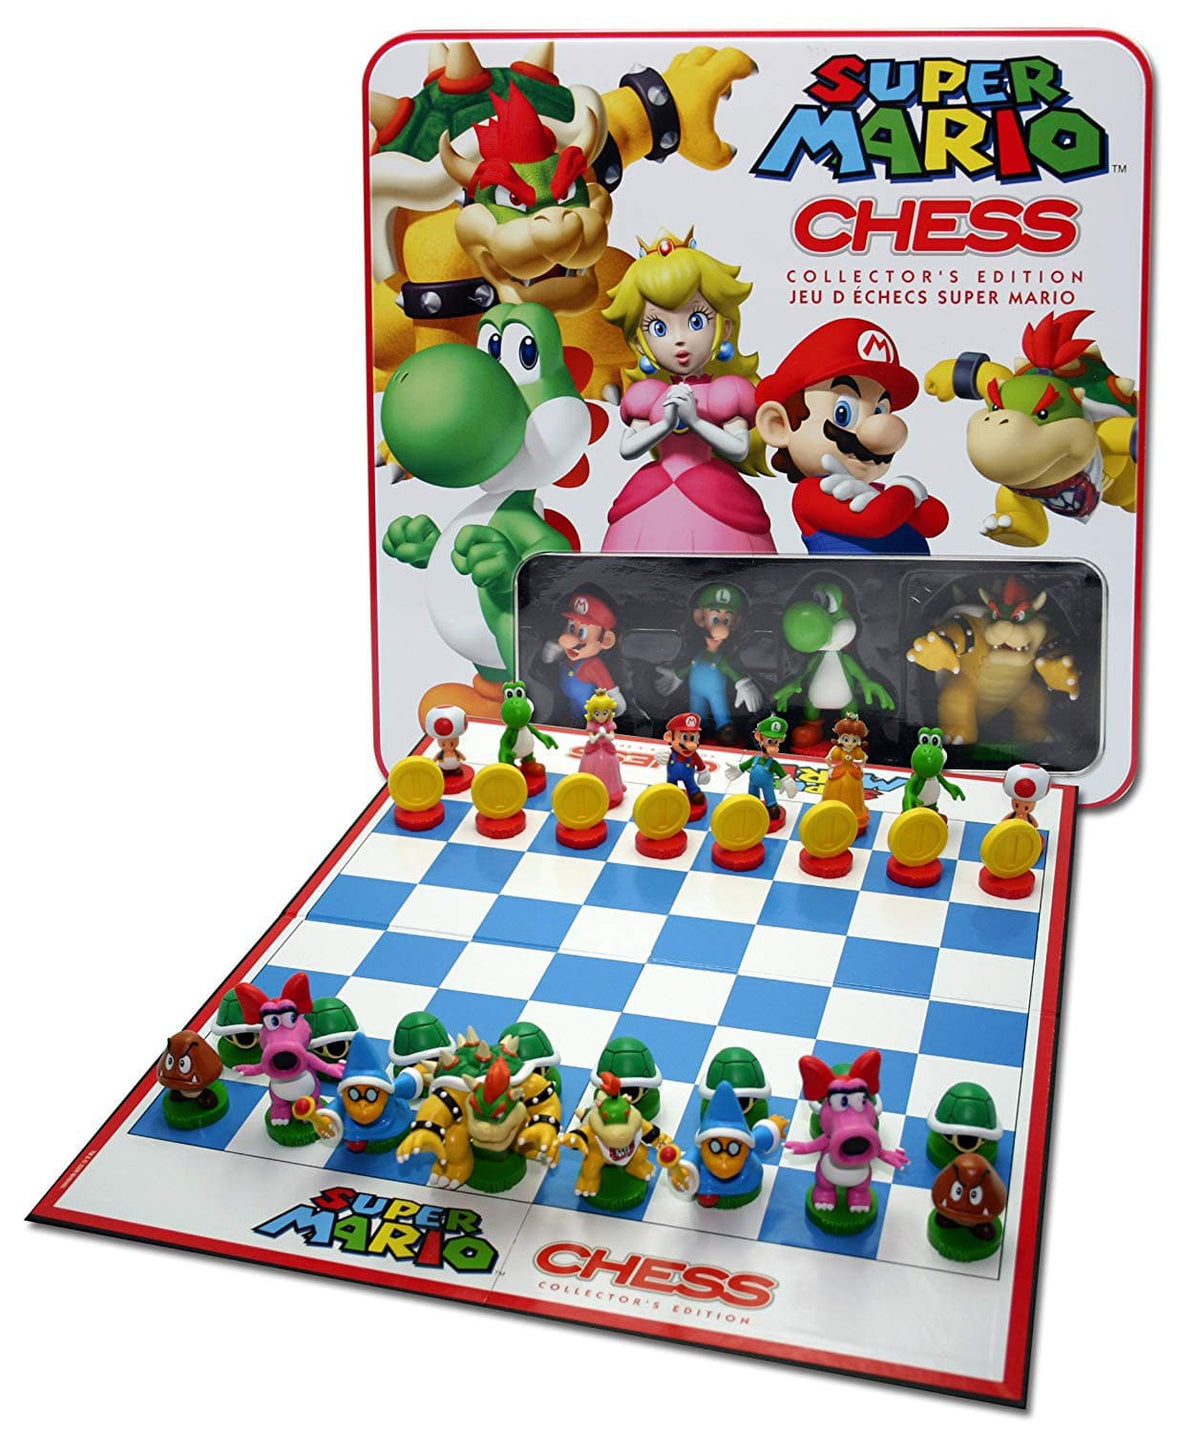 Chess: Super Mario Collector's Edition - Third Eye